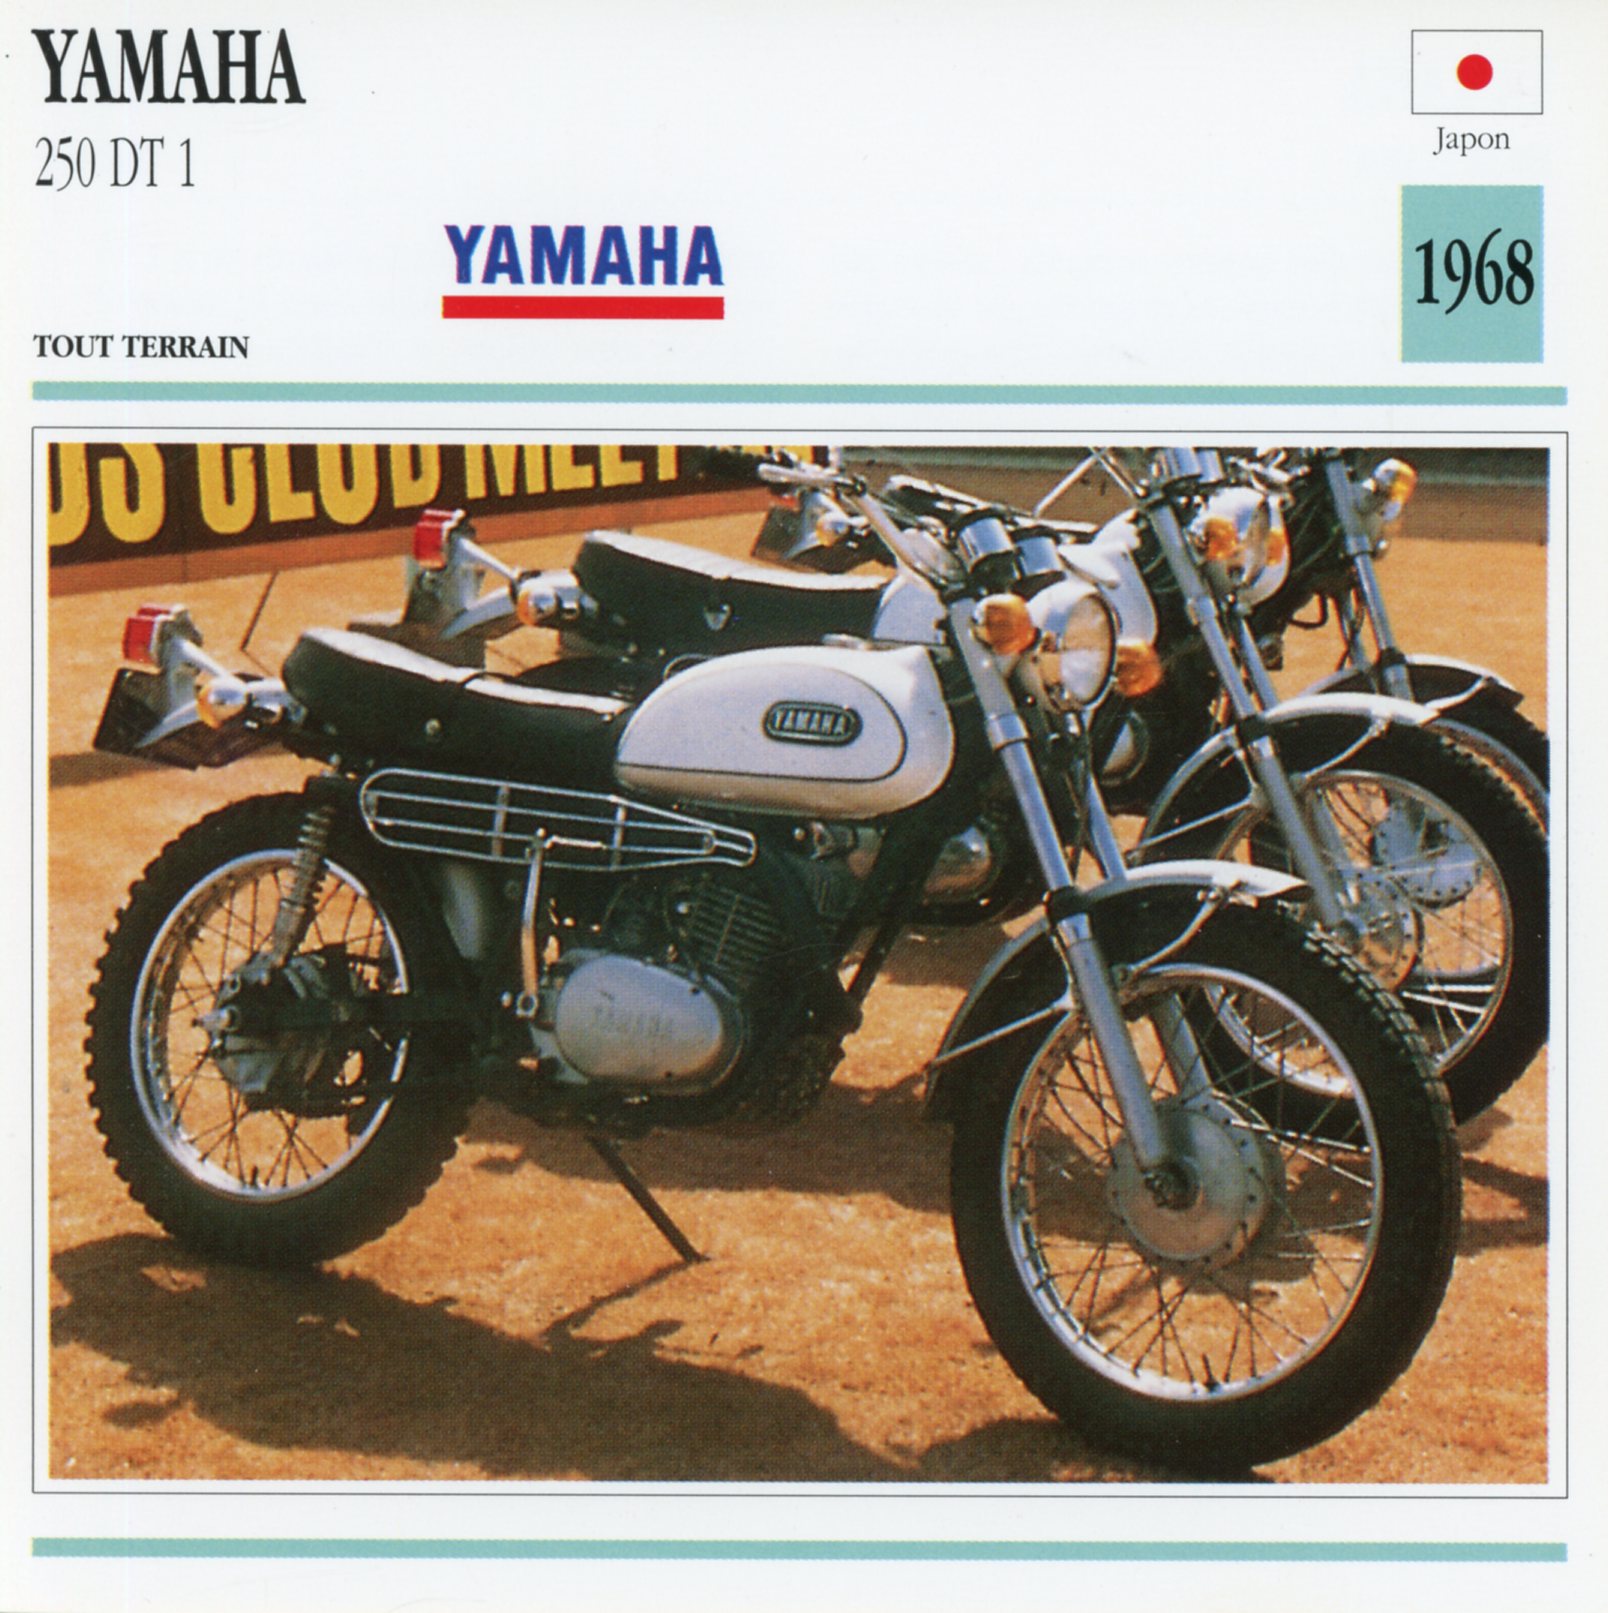 FICHE MOTO YAMAHA 250 DT 1 / DT1 - 1968